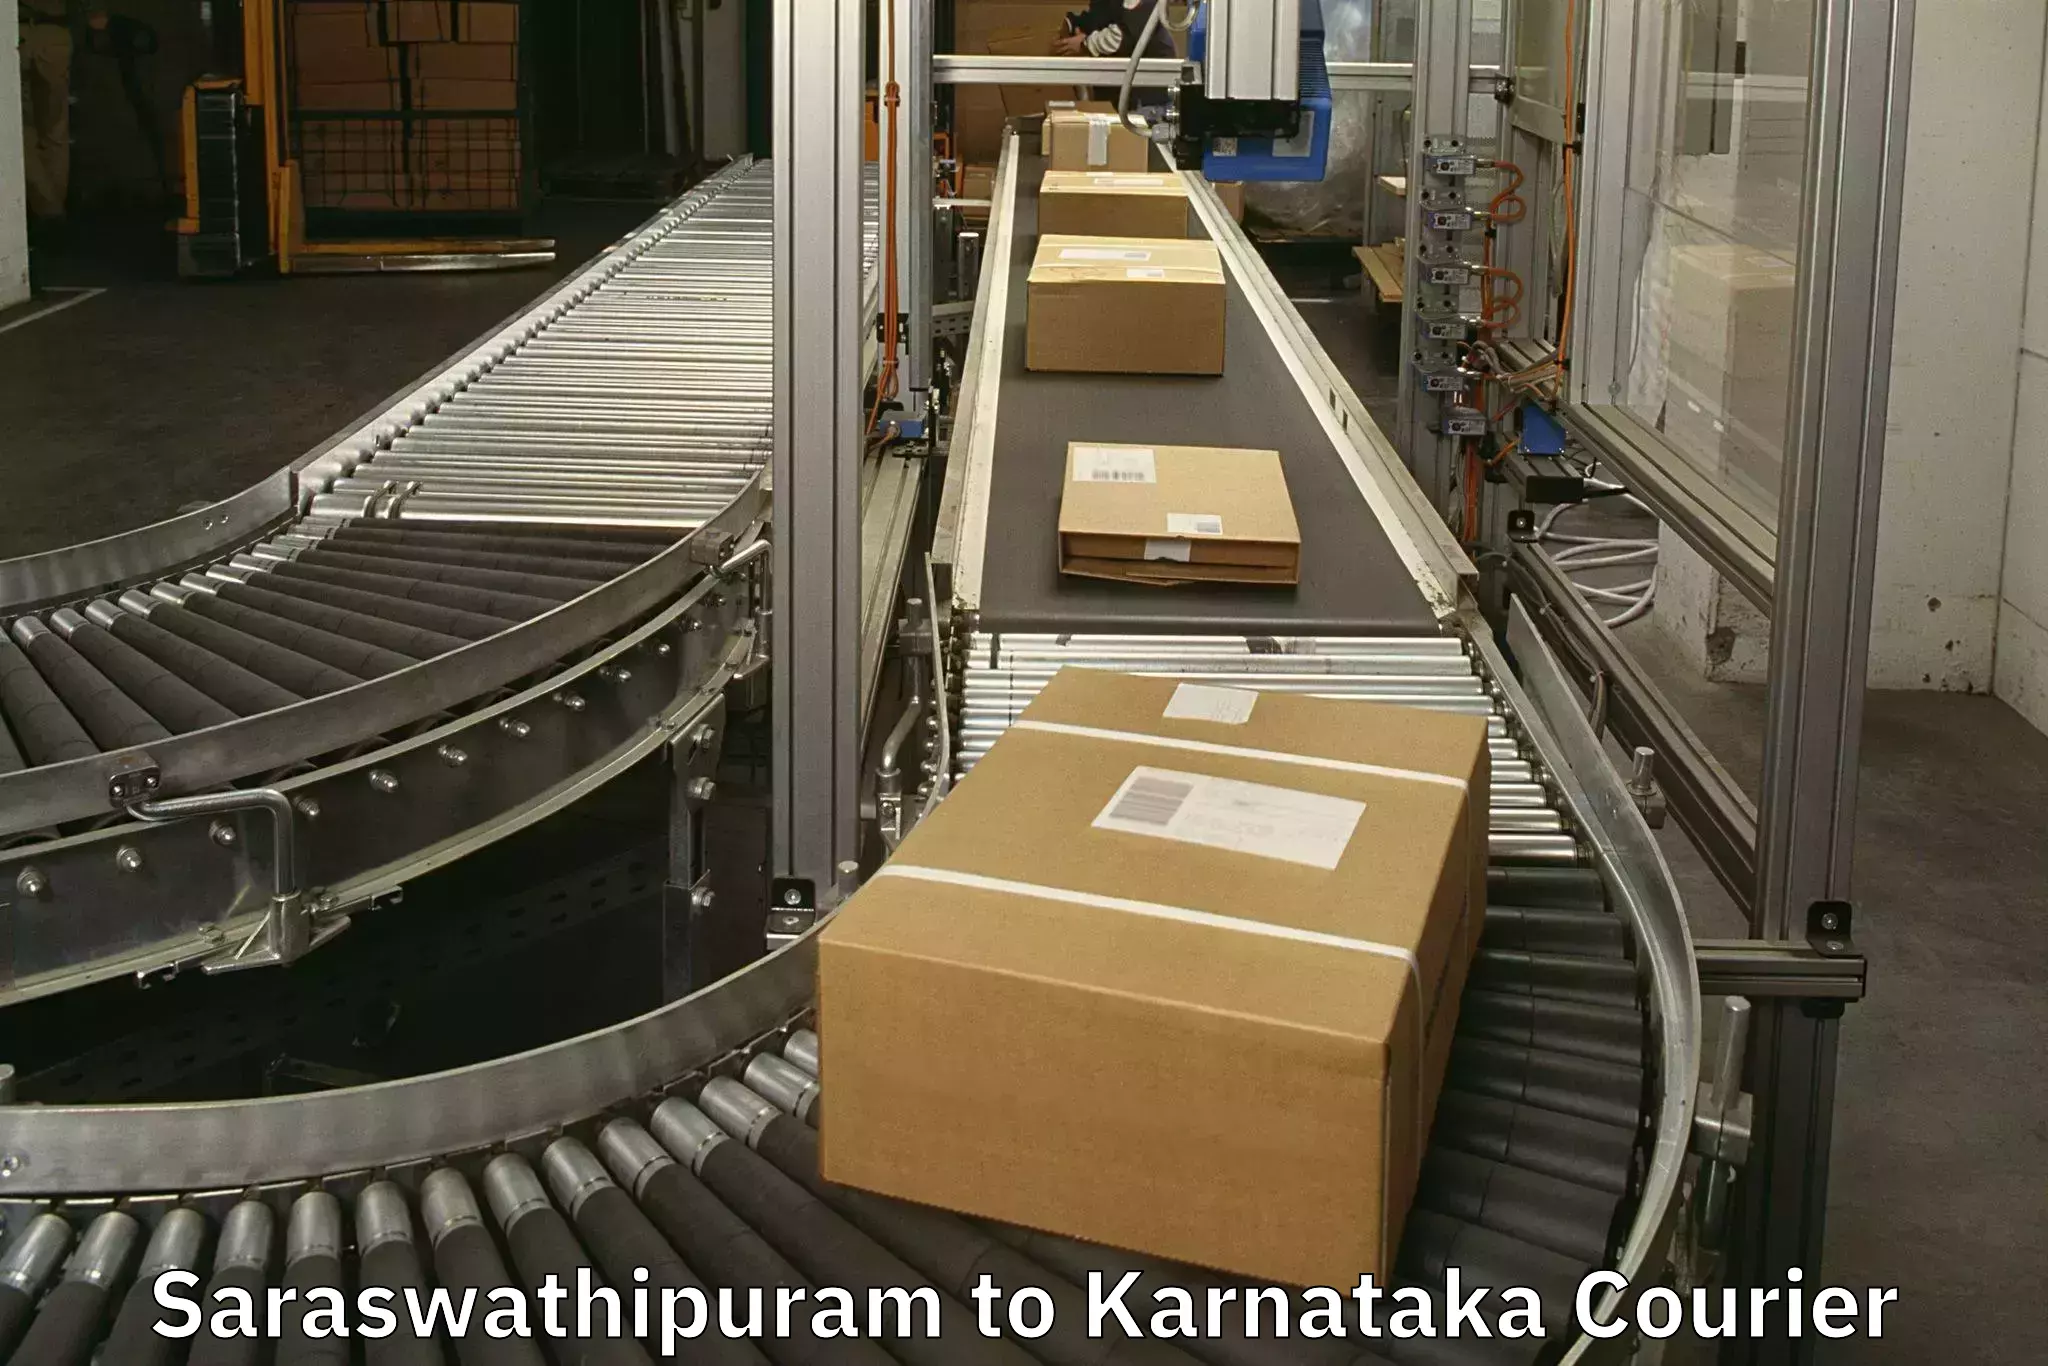 Baggage handling services Saraswathipuram to Karnataka